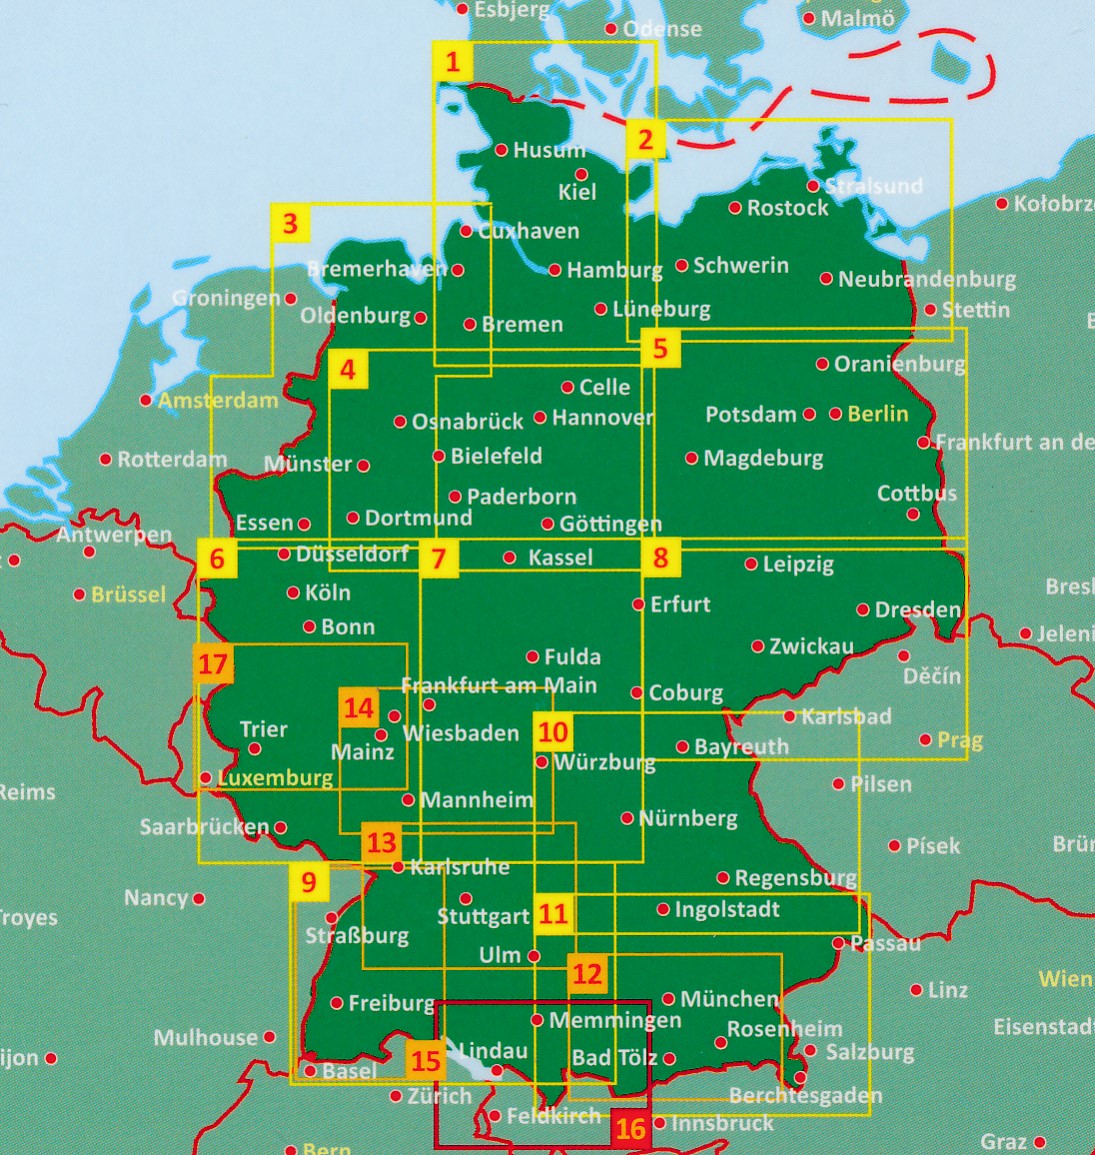 Overzicht top 10 wegenkaarten Duitsland 1:150.000 Freytag & Berndt